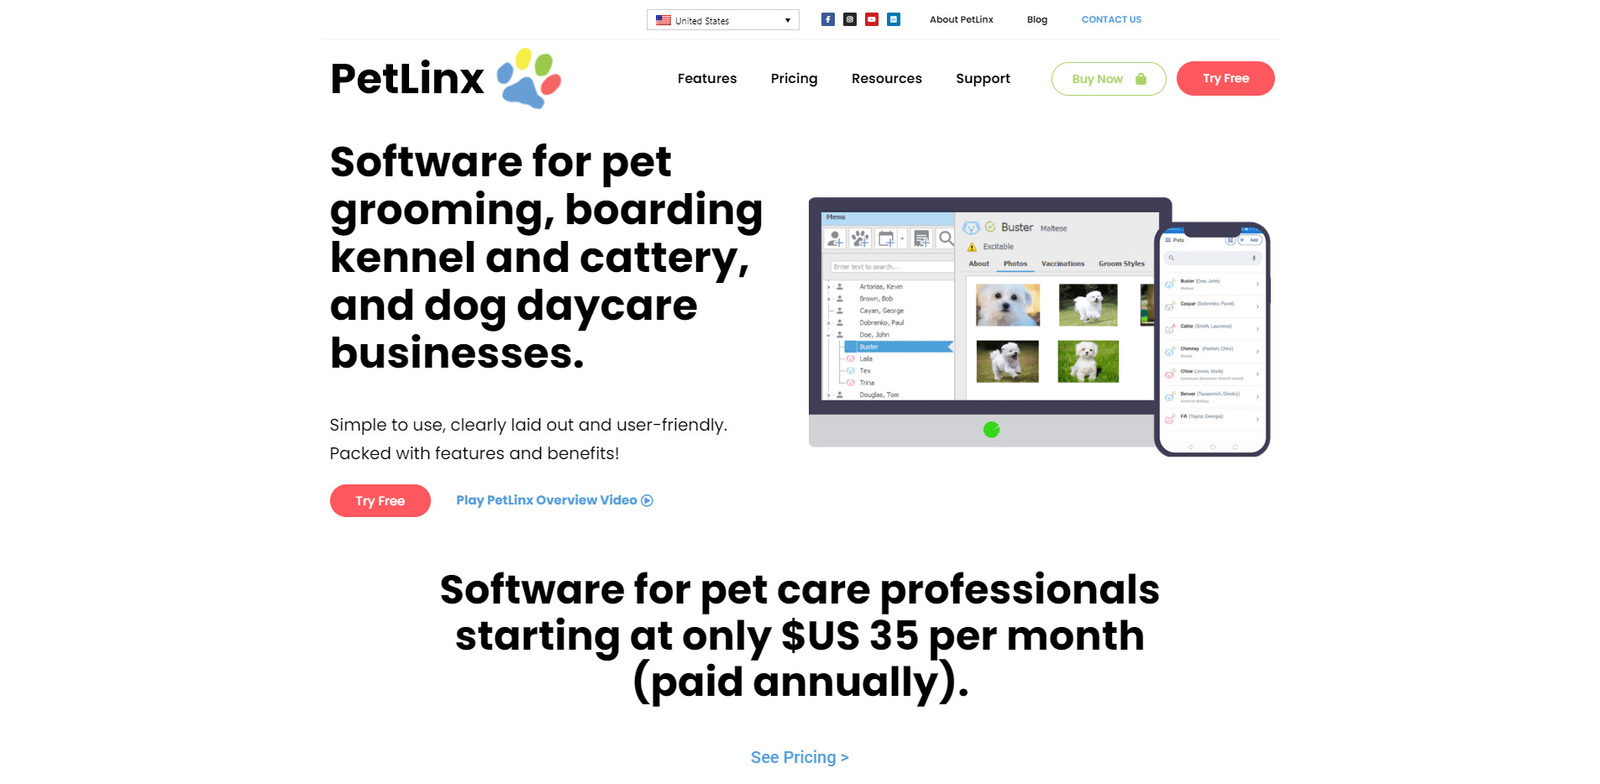 PetLinx 的图片，这是一款基于桌面和云的狗舍应用程序。